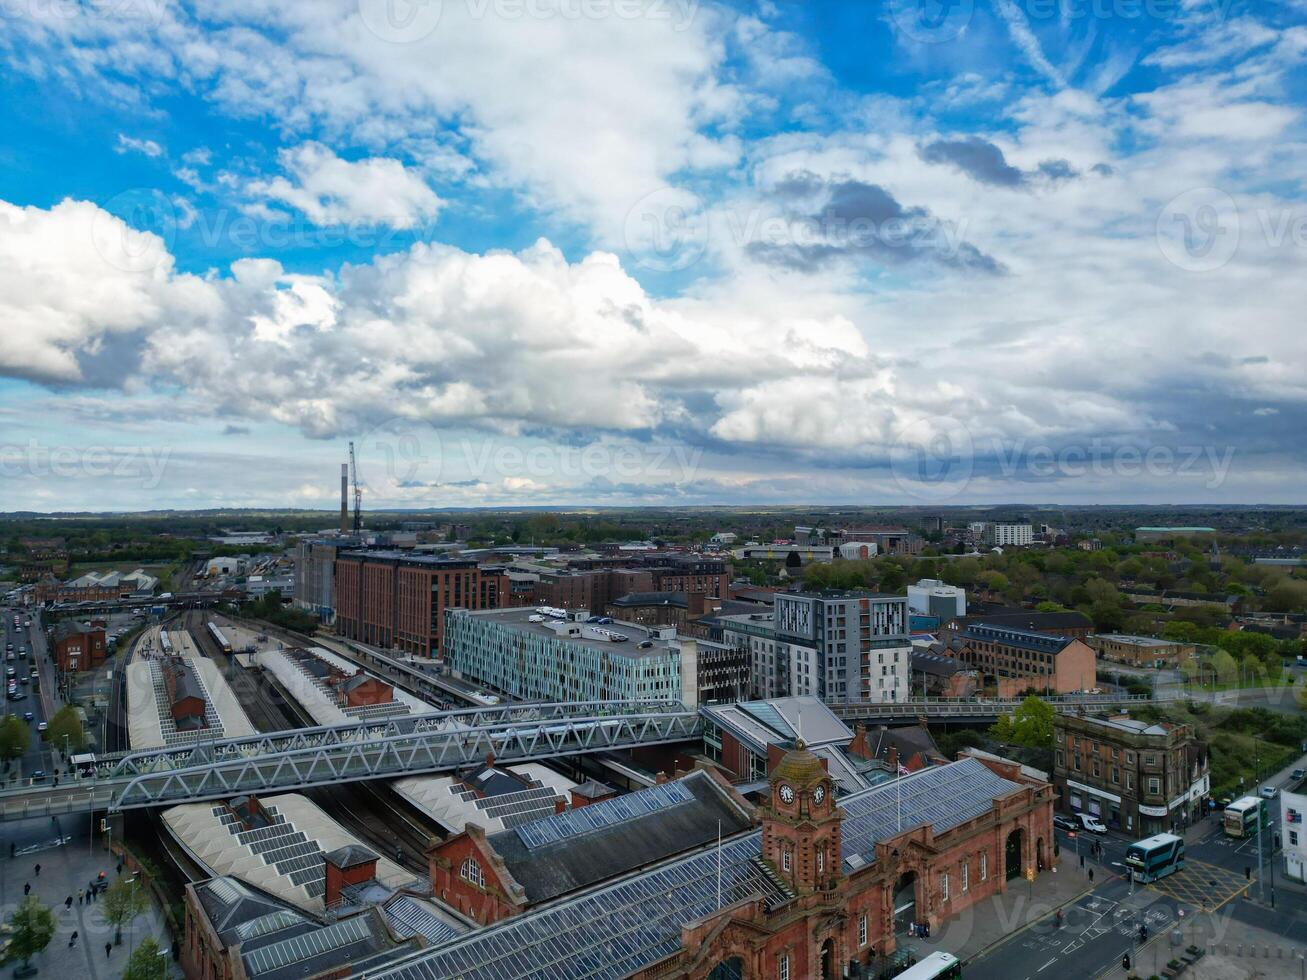 mooi antenne visie van historisch centraal nottingham stad langs rivier- Trent, Engeland Verenigde koninkrijk foto